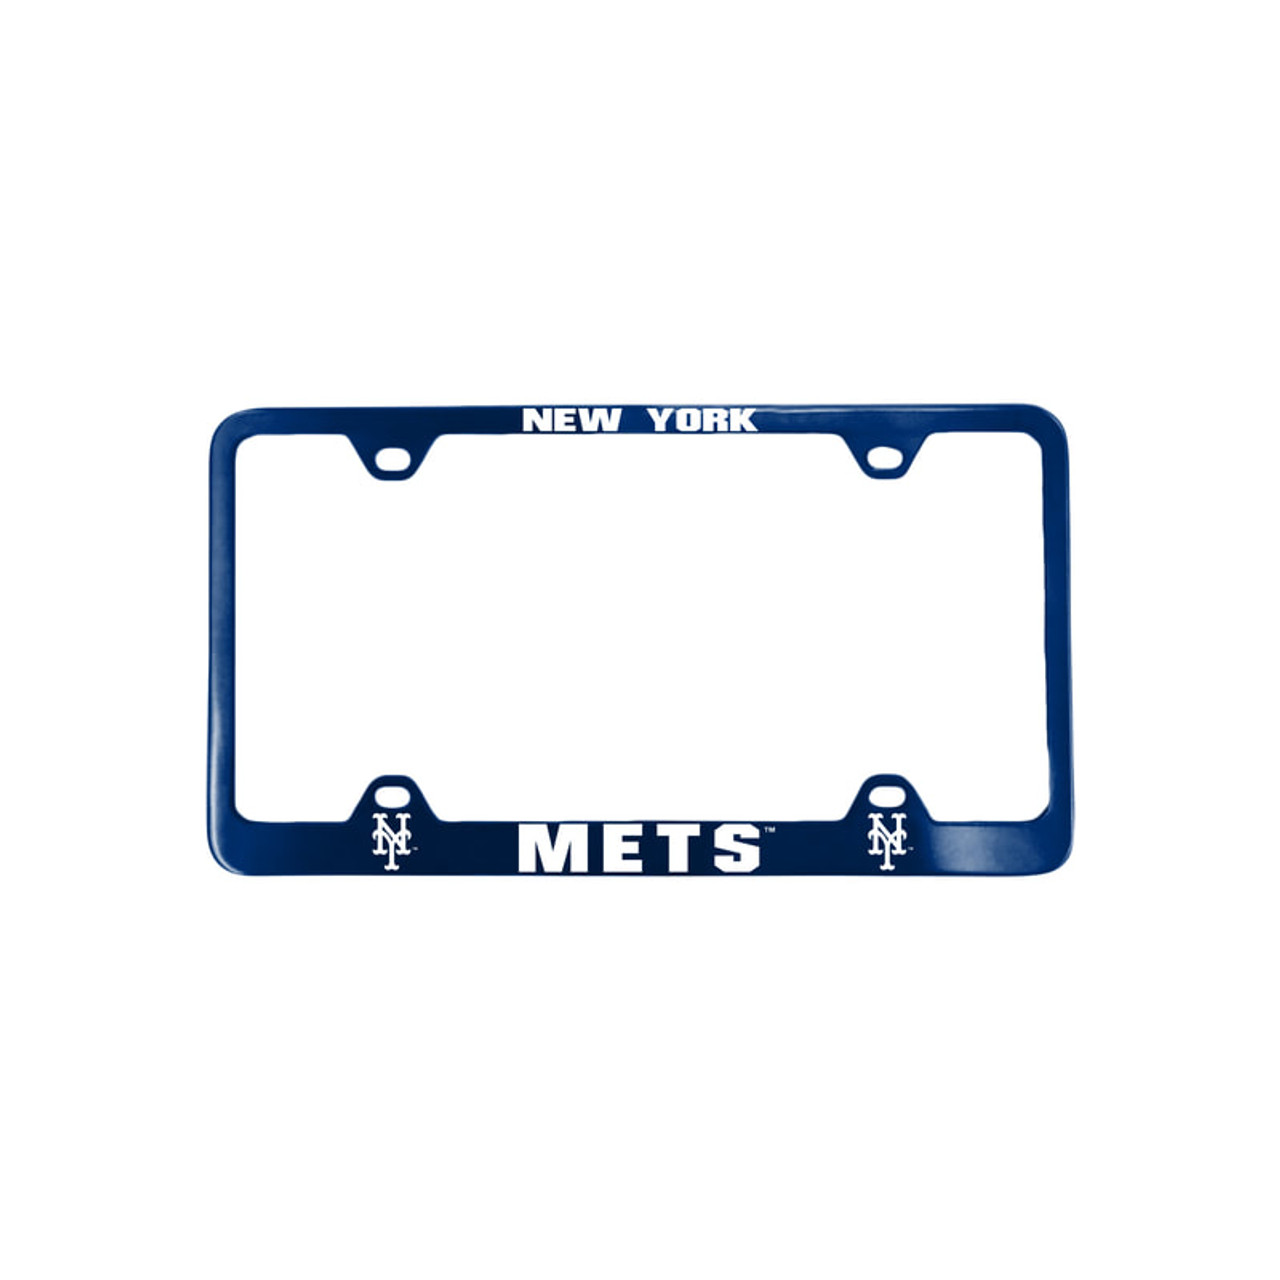 Fremont Die 2324561934 New York Mets Laser Cut License Plate Frame, Blue